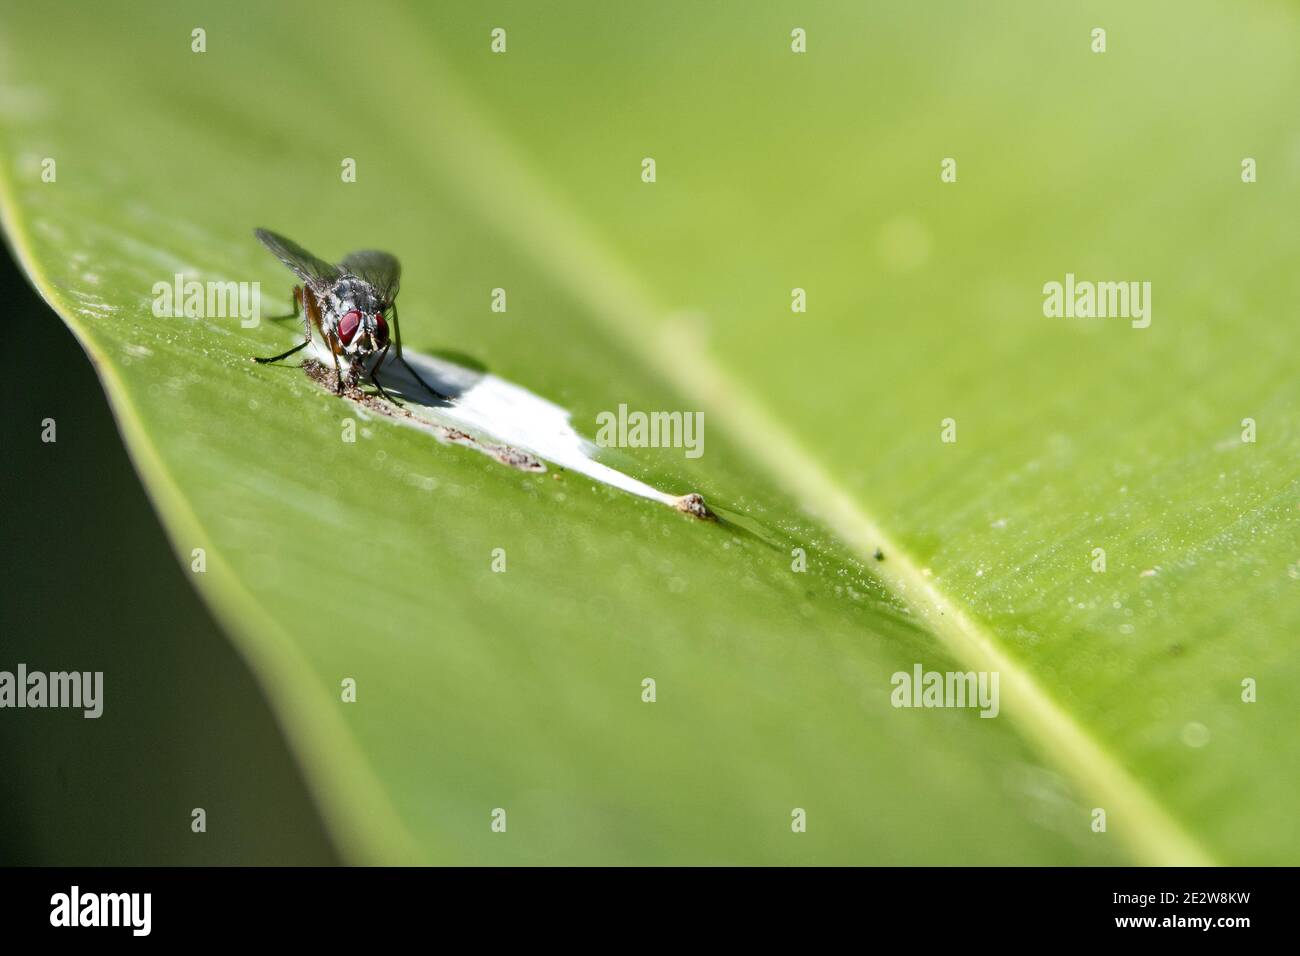 Guatemala, Centroamérica: Una mosca se sienta en una hoja verde grasa y chupa Foto de stock